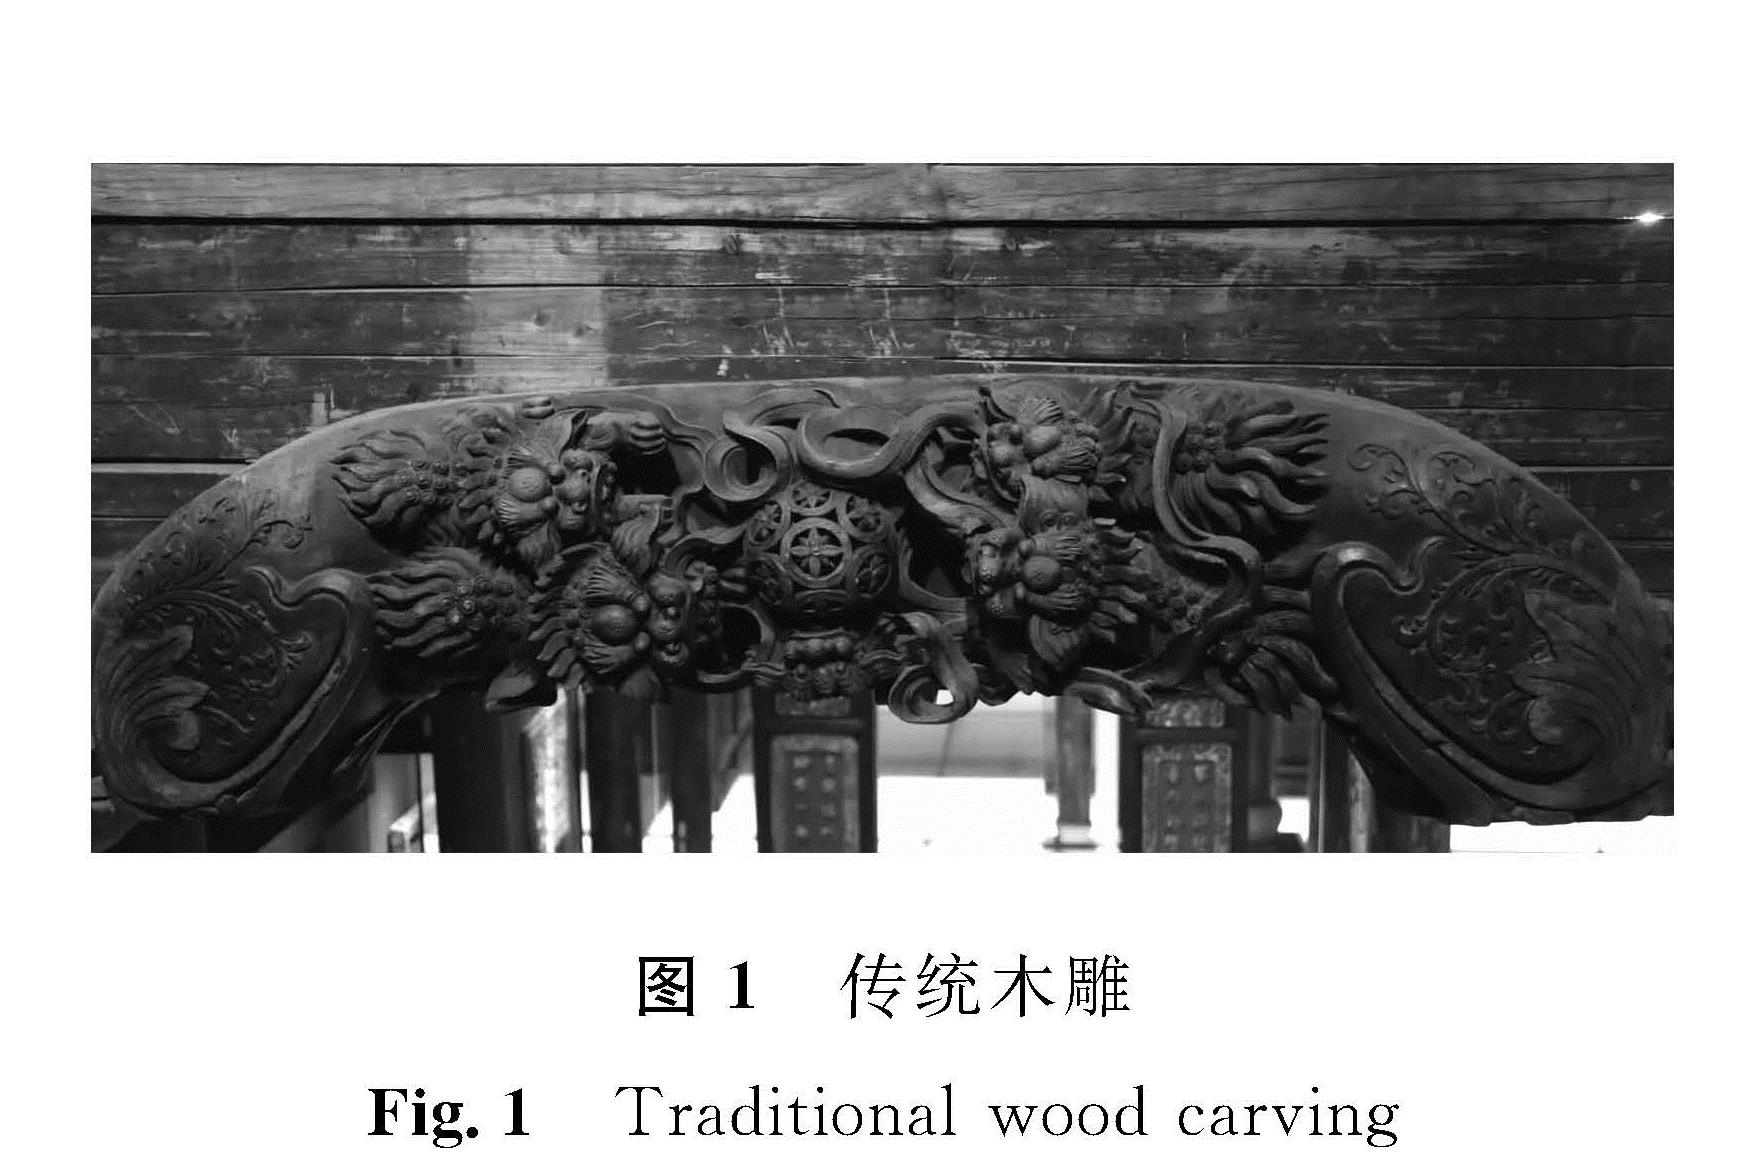 图1 传统木雕<br/>Fig.1 Traditional wood carving